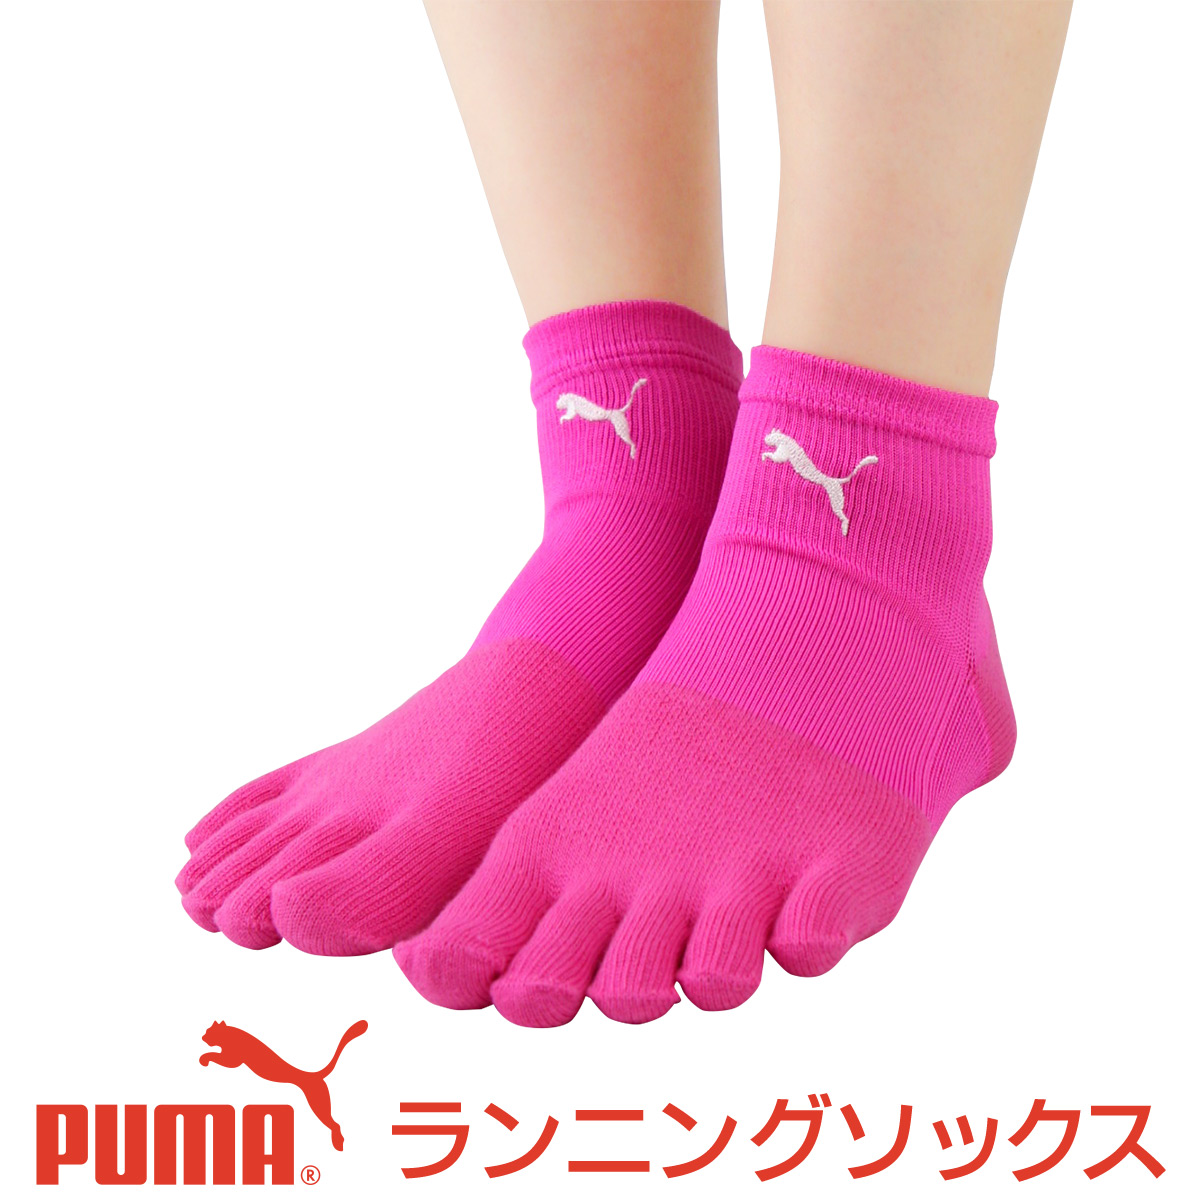 セール！PUMA （ プーマ ） レディス 靴下 足底滑り止め付き アーチフィットサポート  5本指 マラソン ランニング ソックス 3562-204ポイント10倍